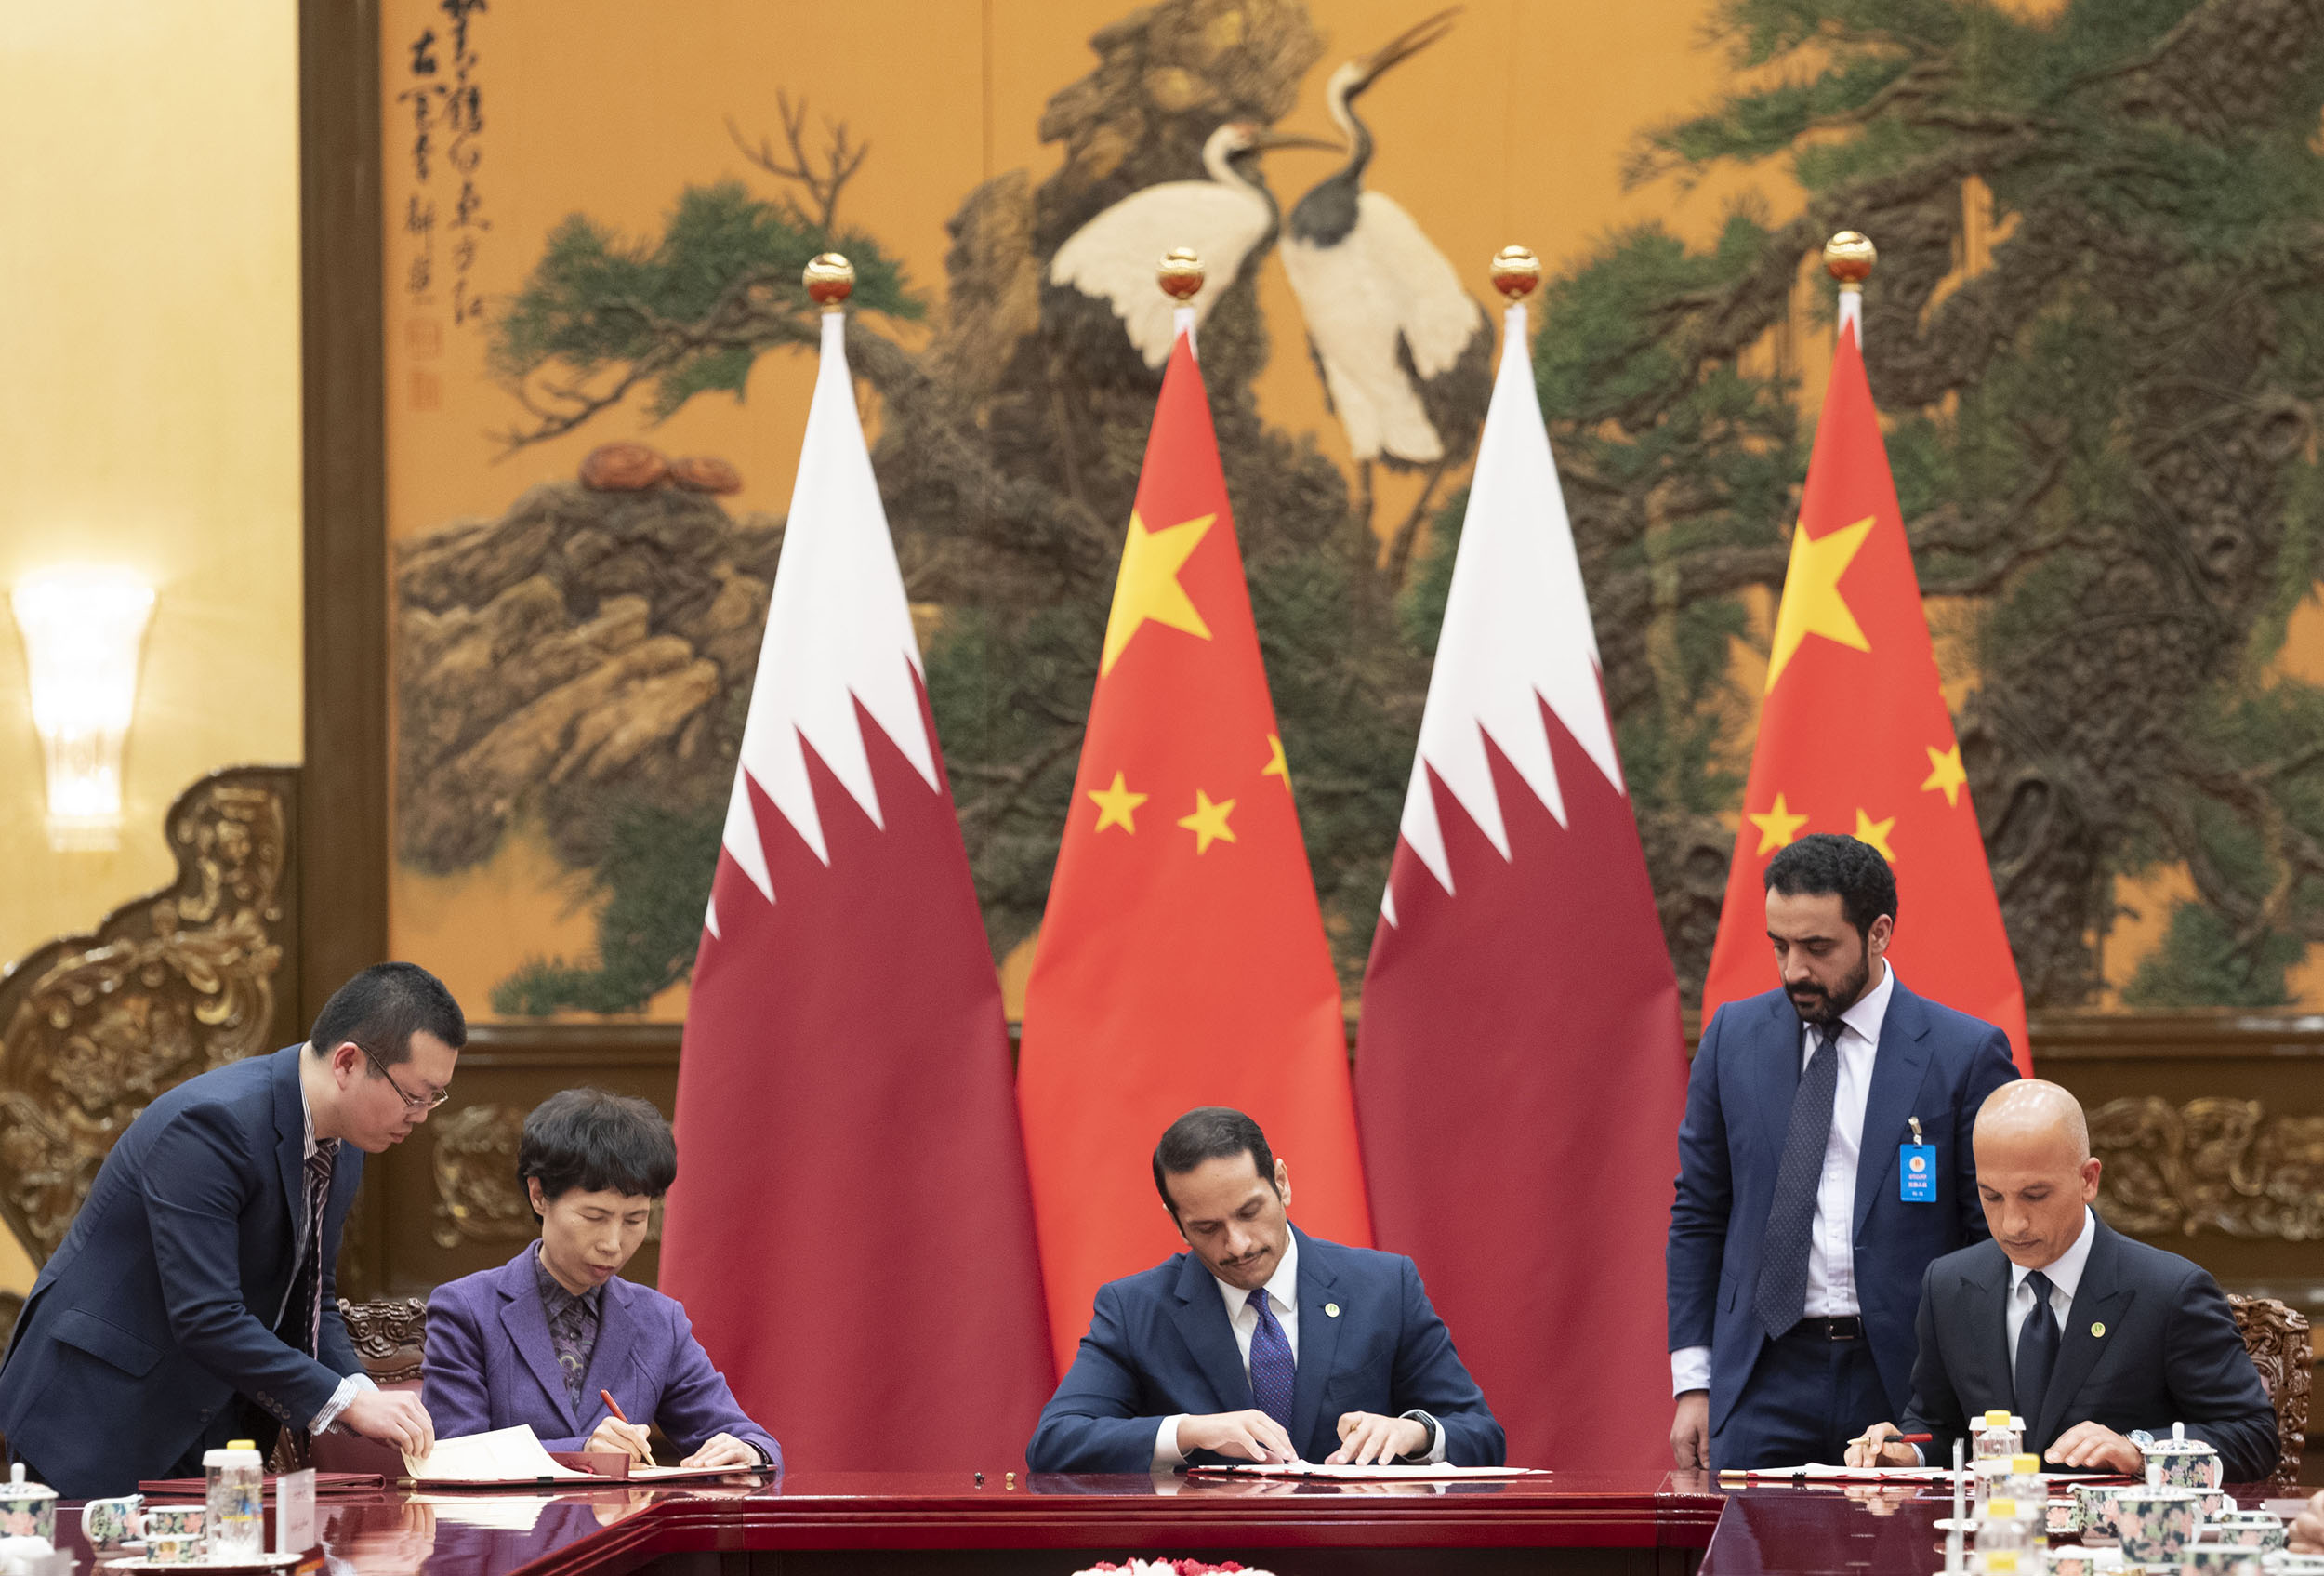 مساعي قطرية لدعم توسع الشركات الصينية عبر العالم